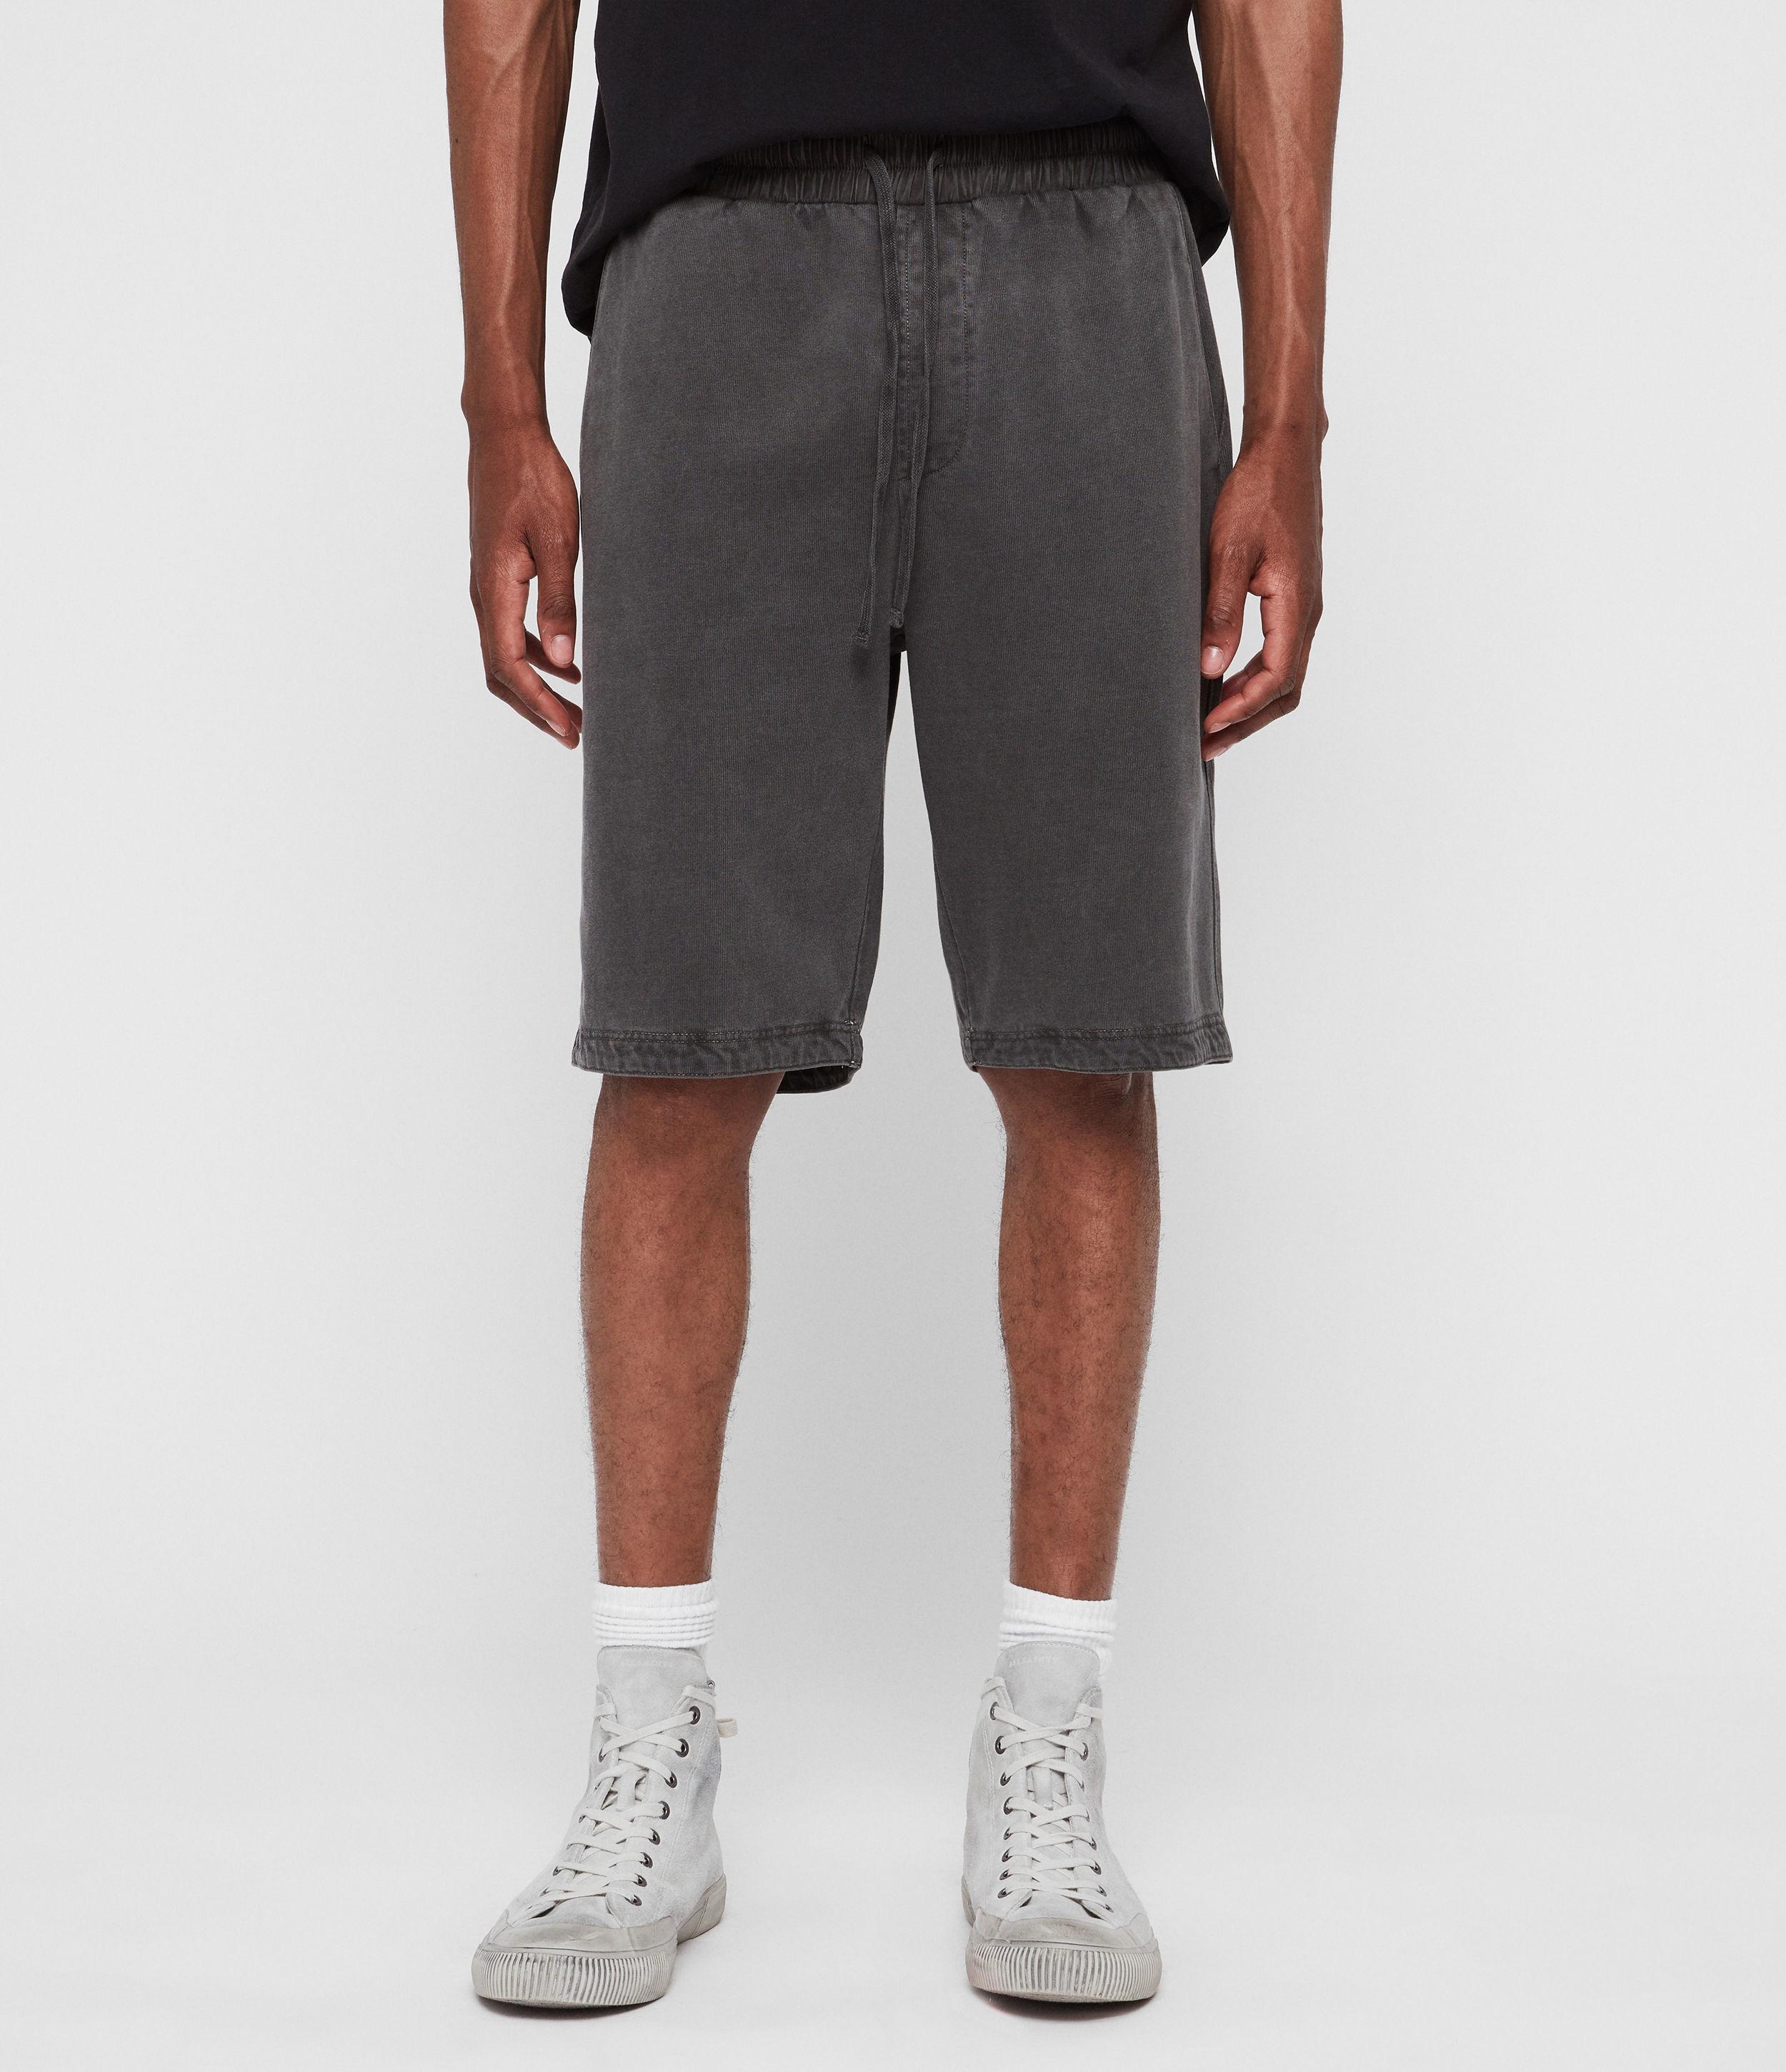 AllSaints Pierce Sweat Shorts in Black for Men - Lyst